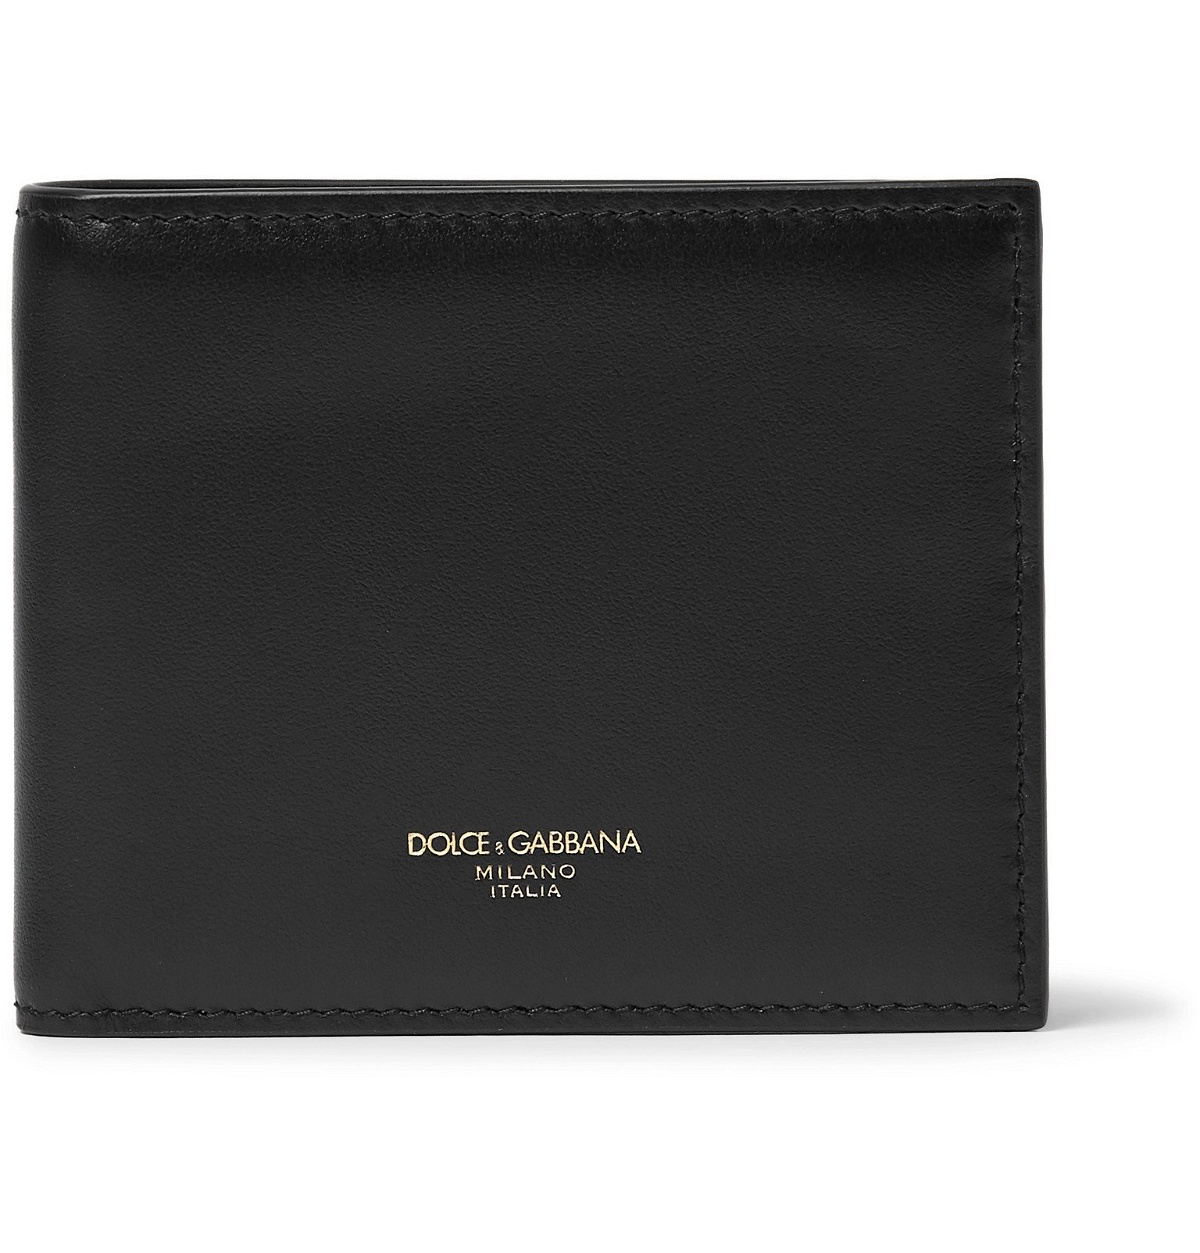 Dolce & Gabbana - Leather Billfold Wallet - Black Dolce & Gabbana